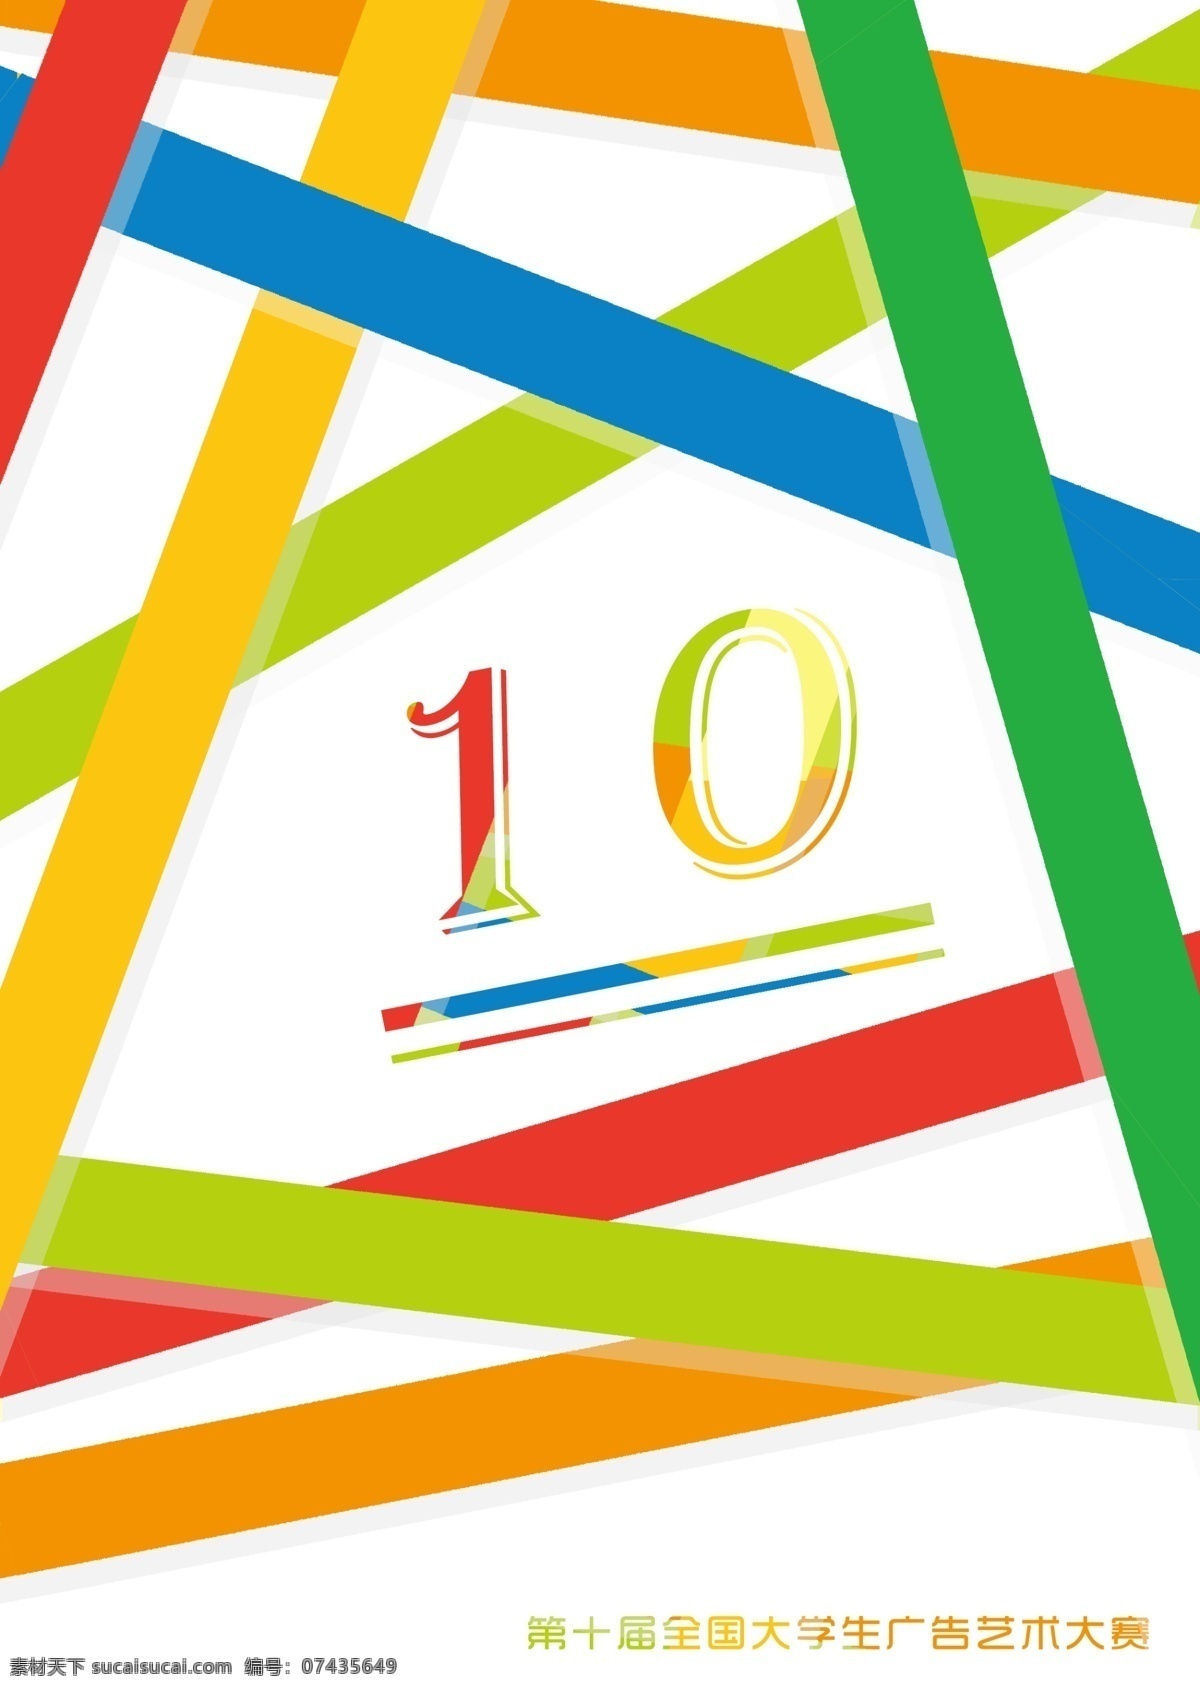 10周年庆典 周年 活动 庆典 庆祝 纪念日 成立 纪念